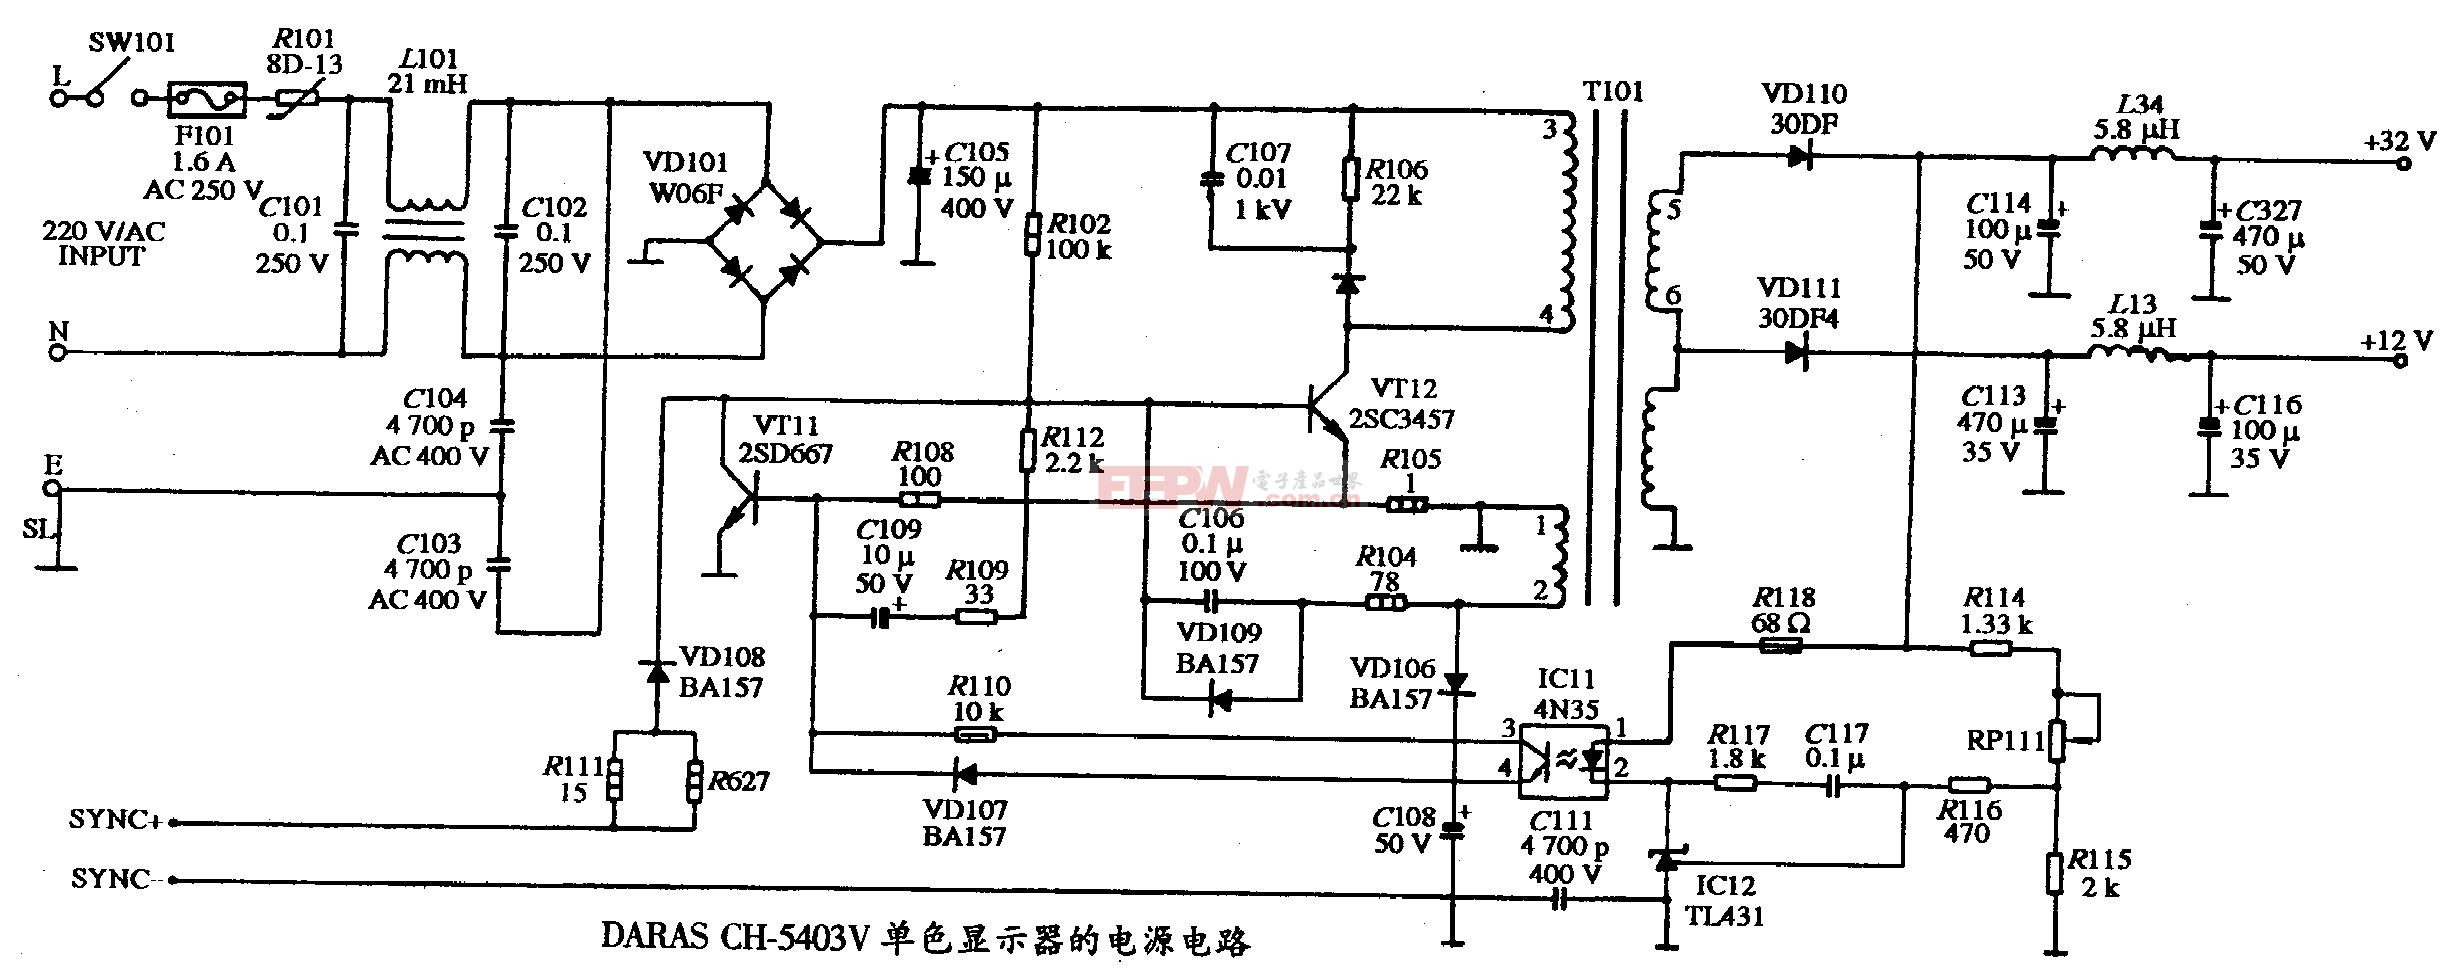 38、DARAS CH-5403V型單色顯示器的電源電路圖